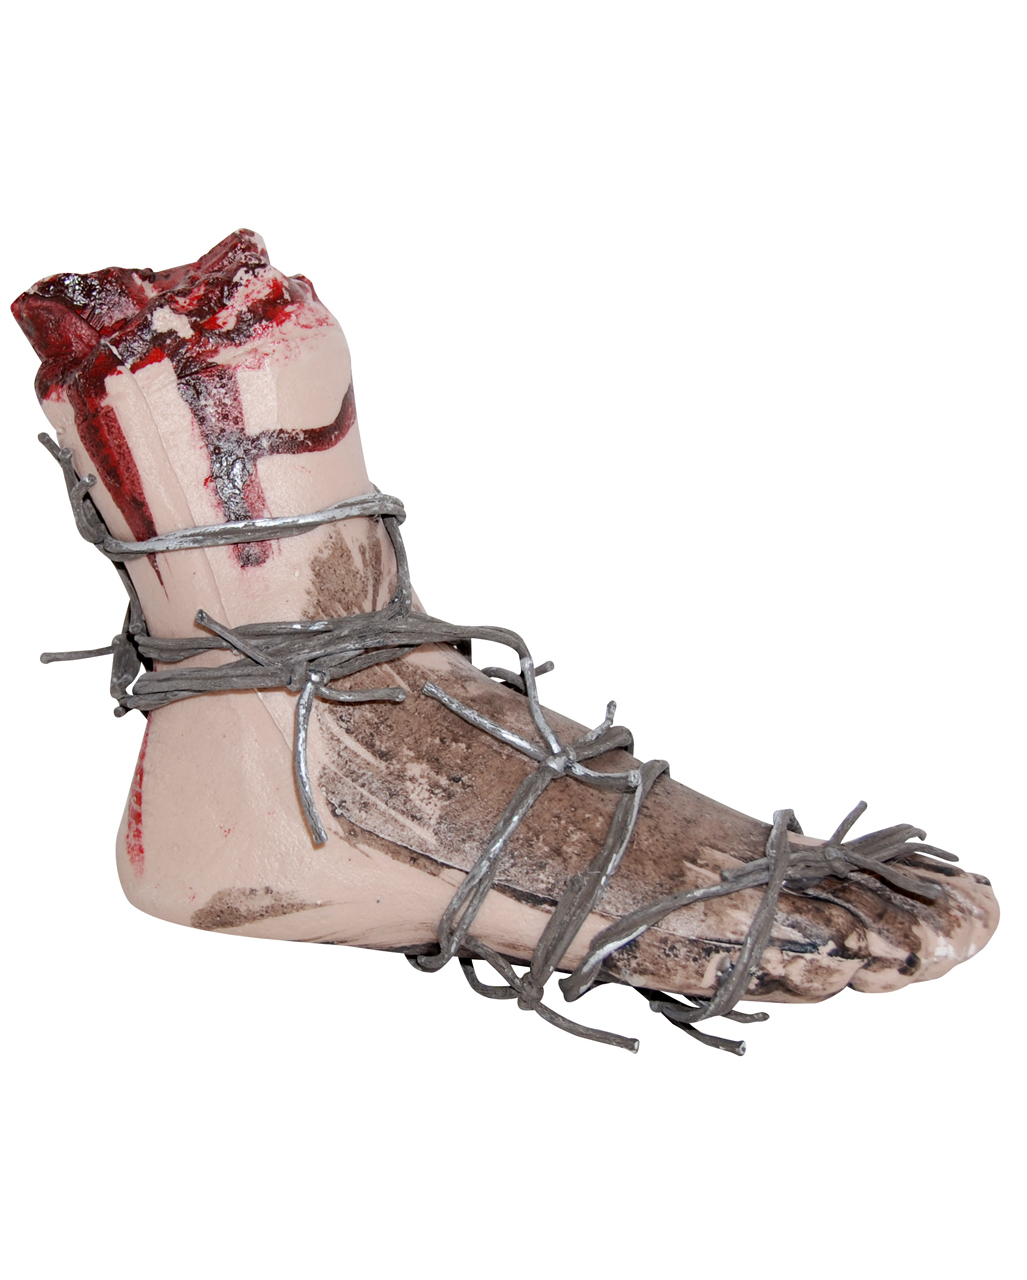 abgetrennter fuss mit stacheldraht umwickelt bloody foot with barbed wire halloween dekoration halloween prop 55455 01